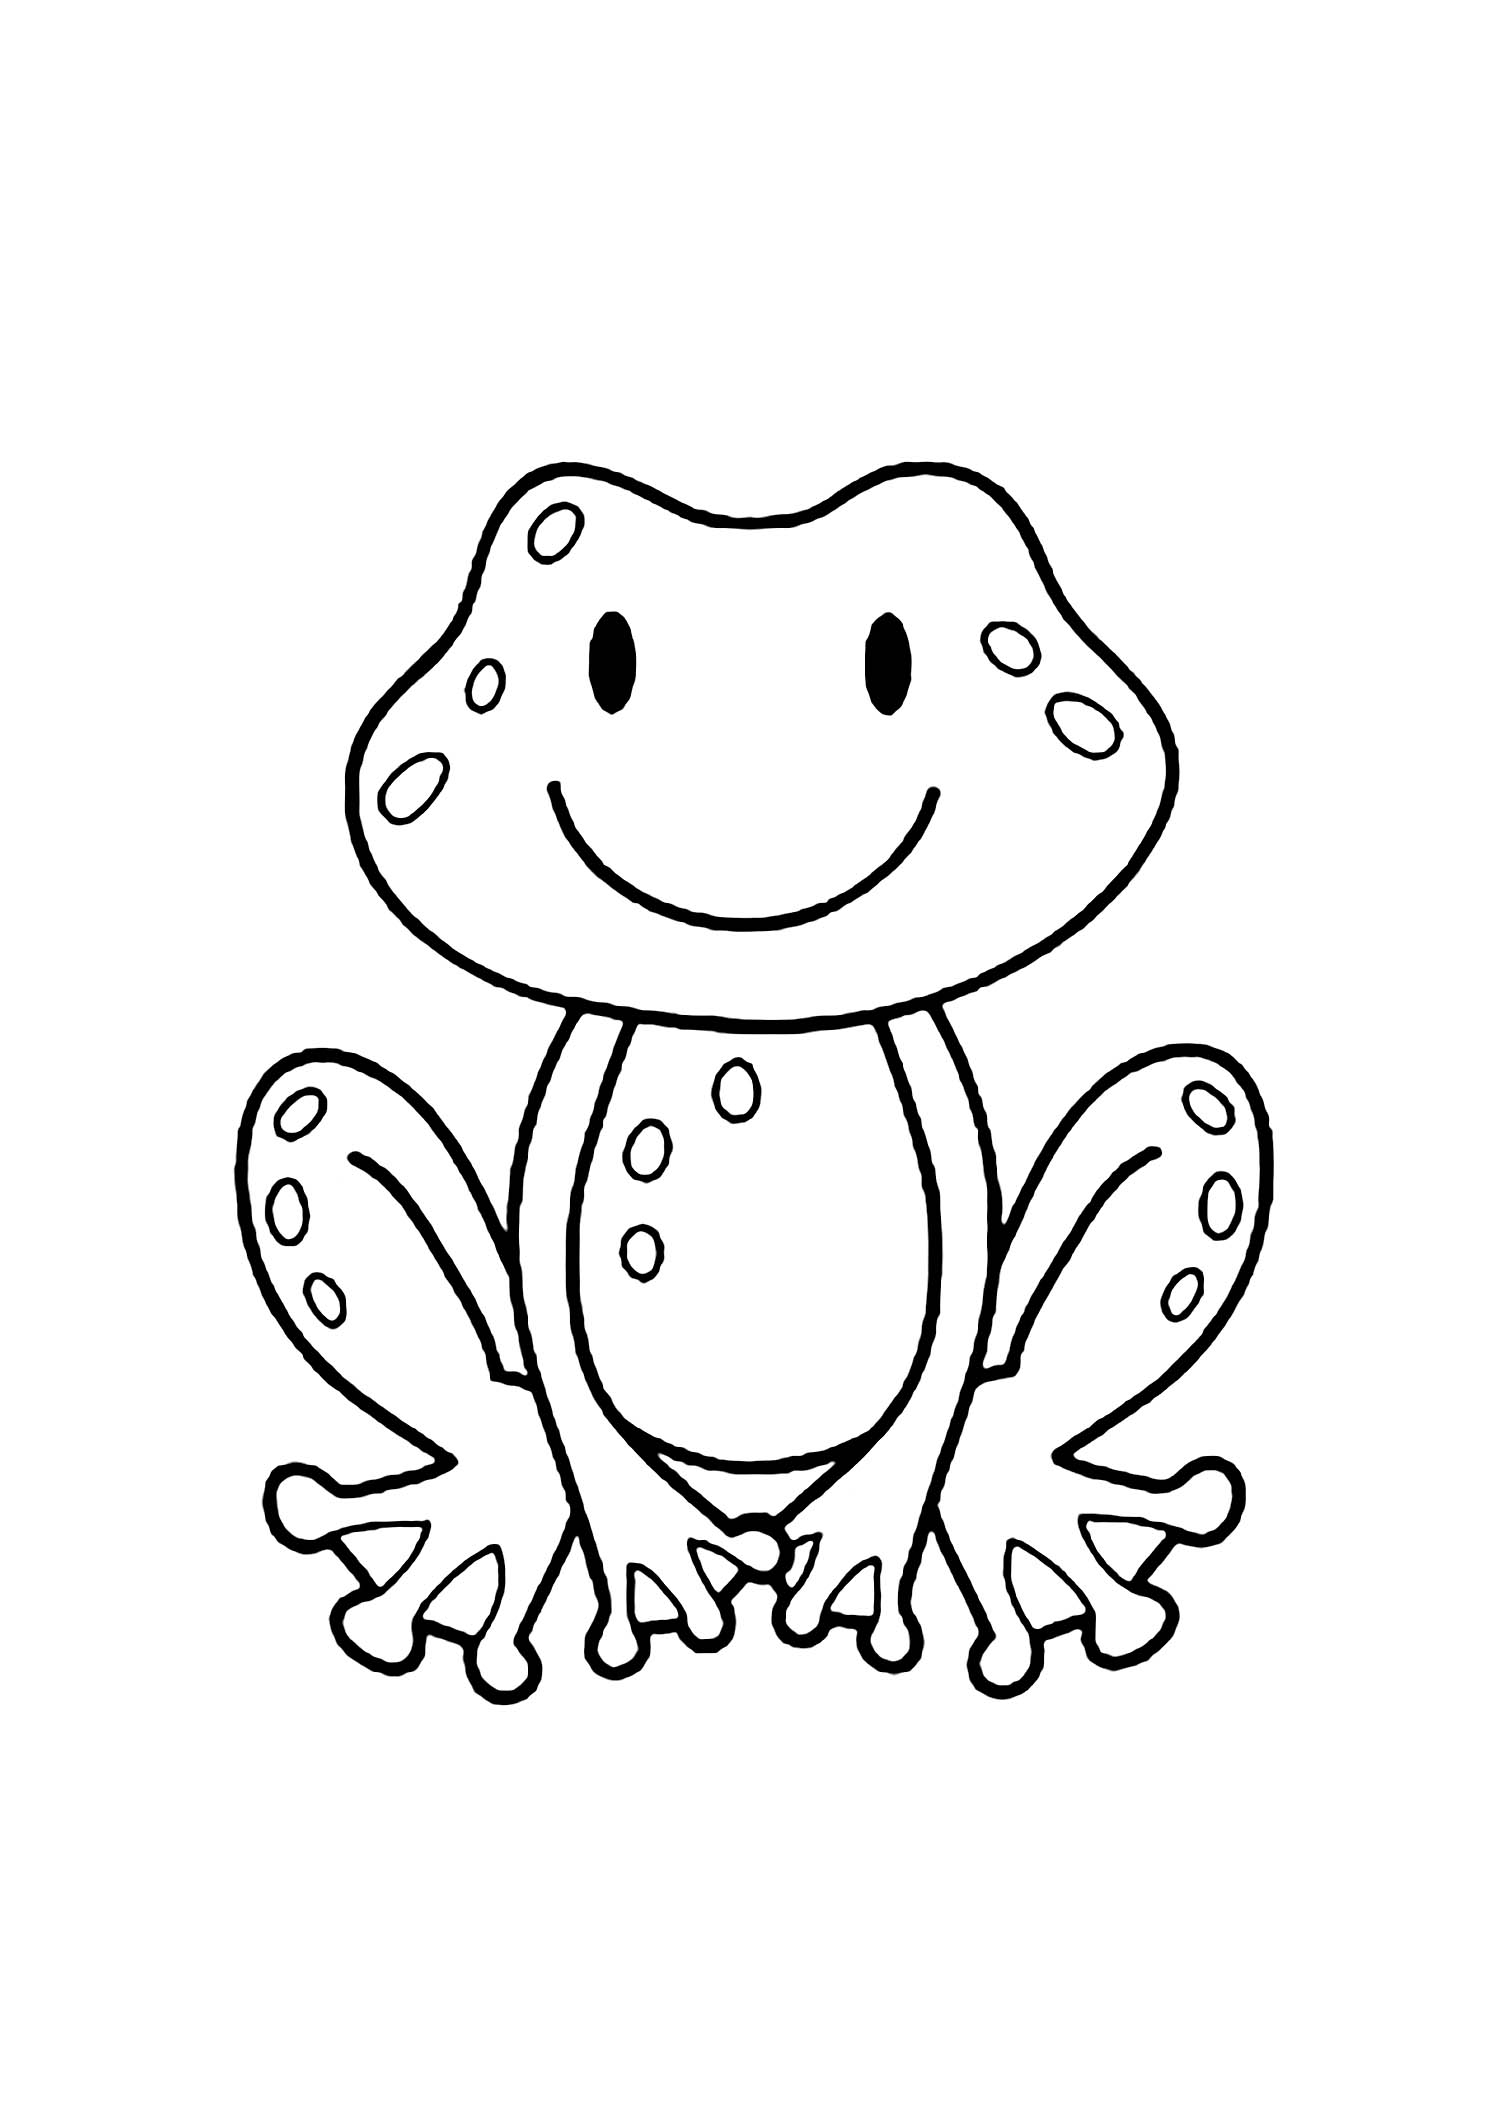 Image de grenouille à colorier, facile pour enfants